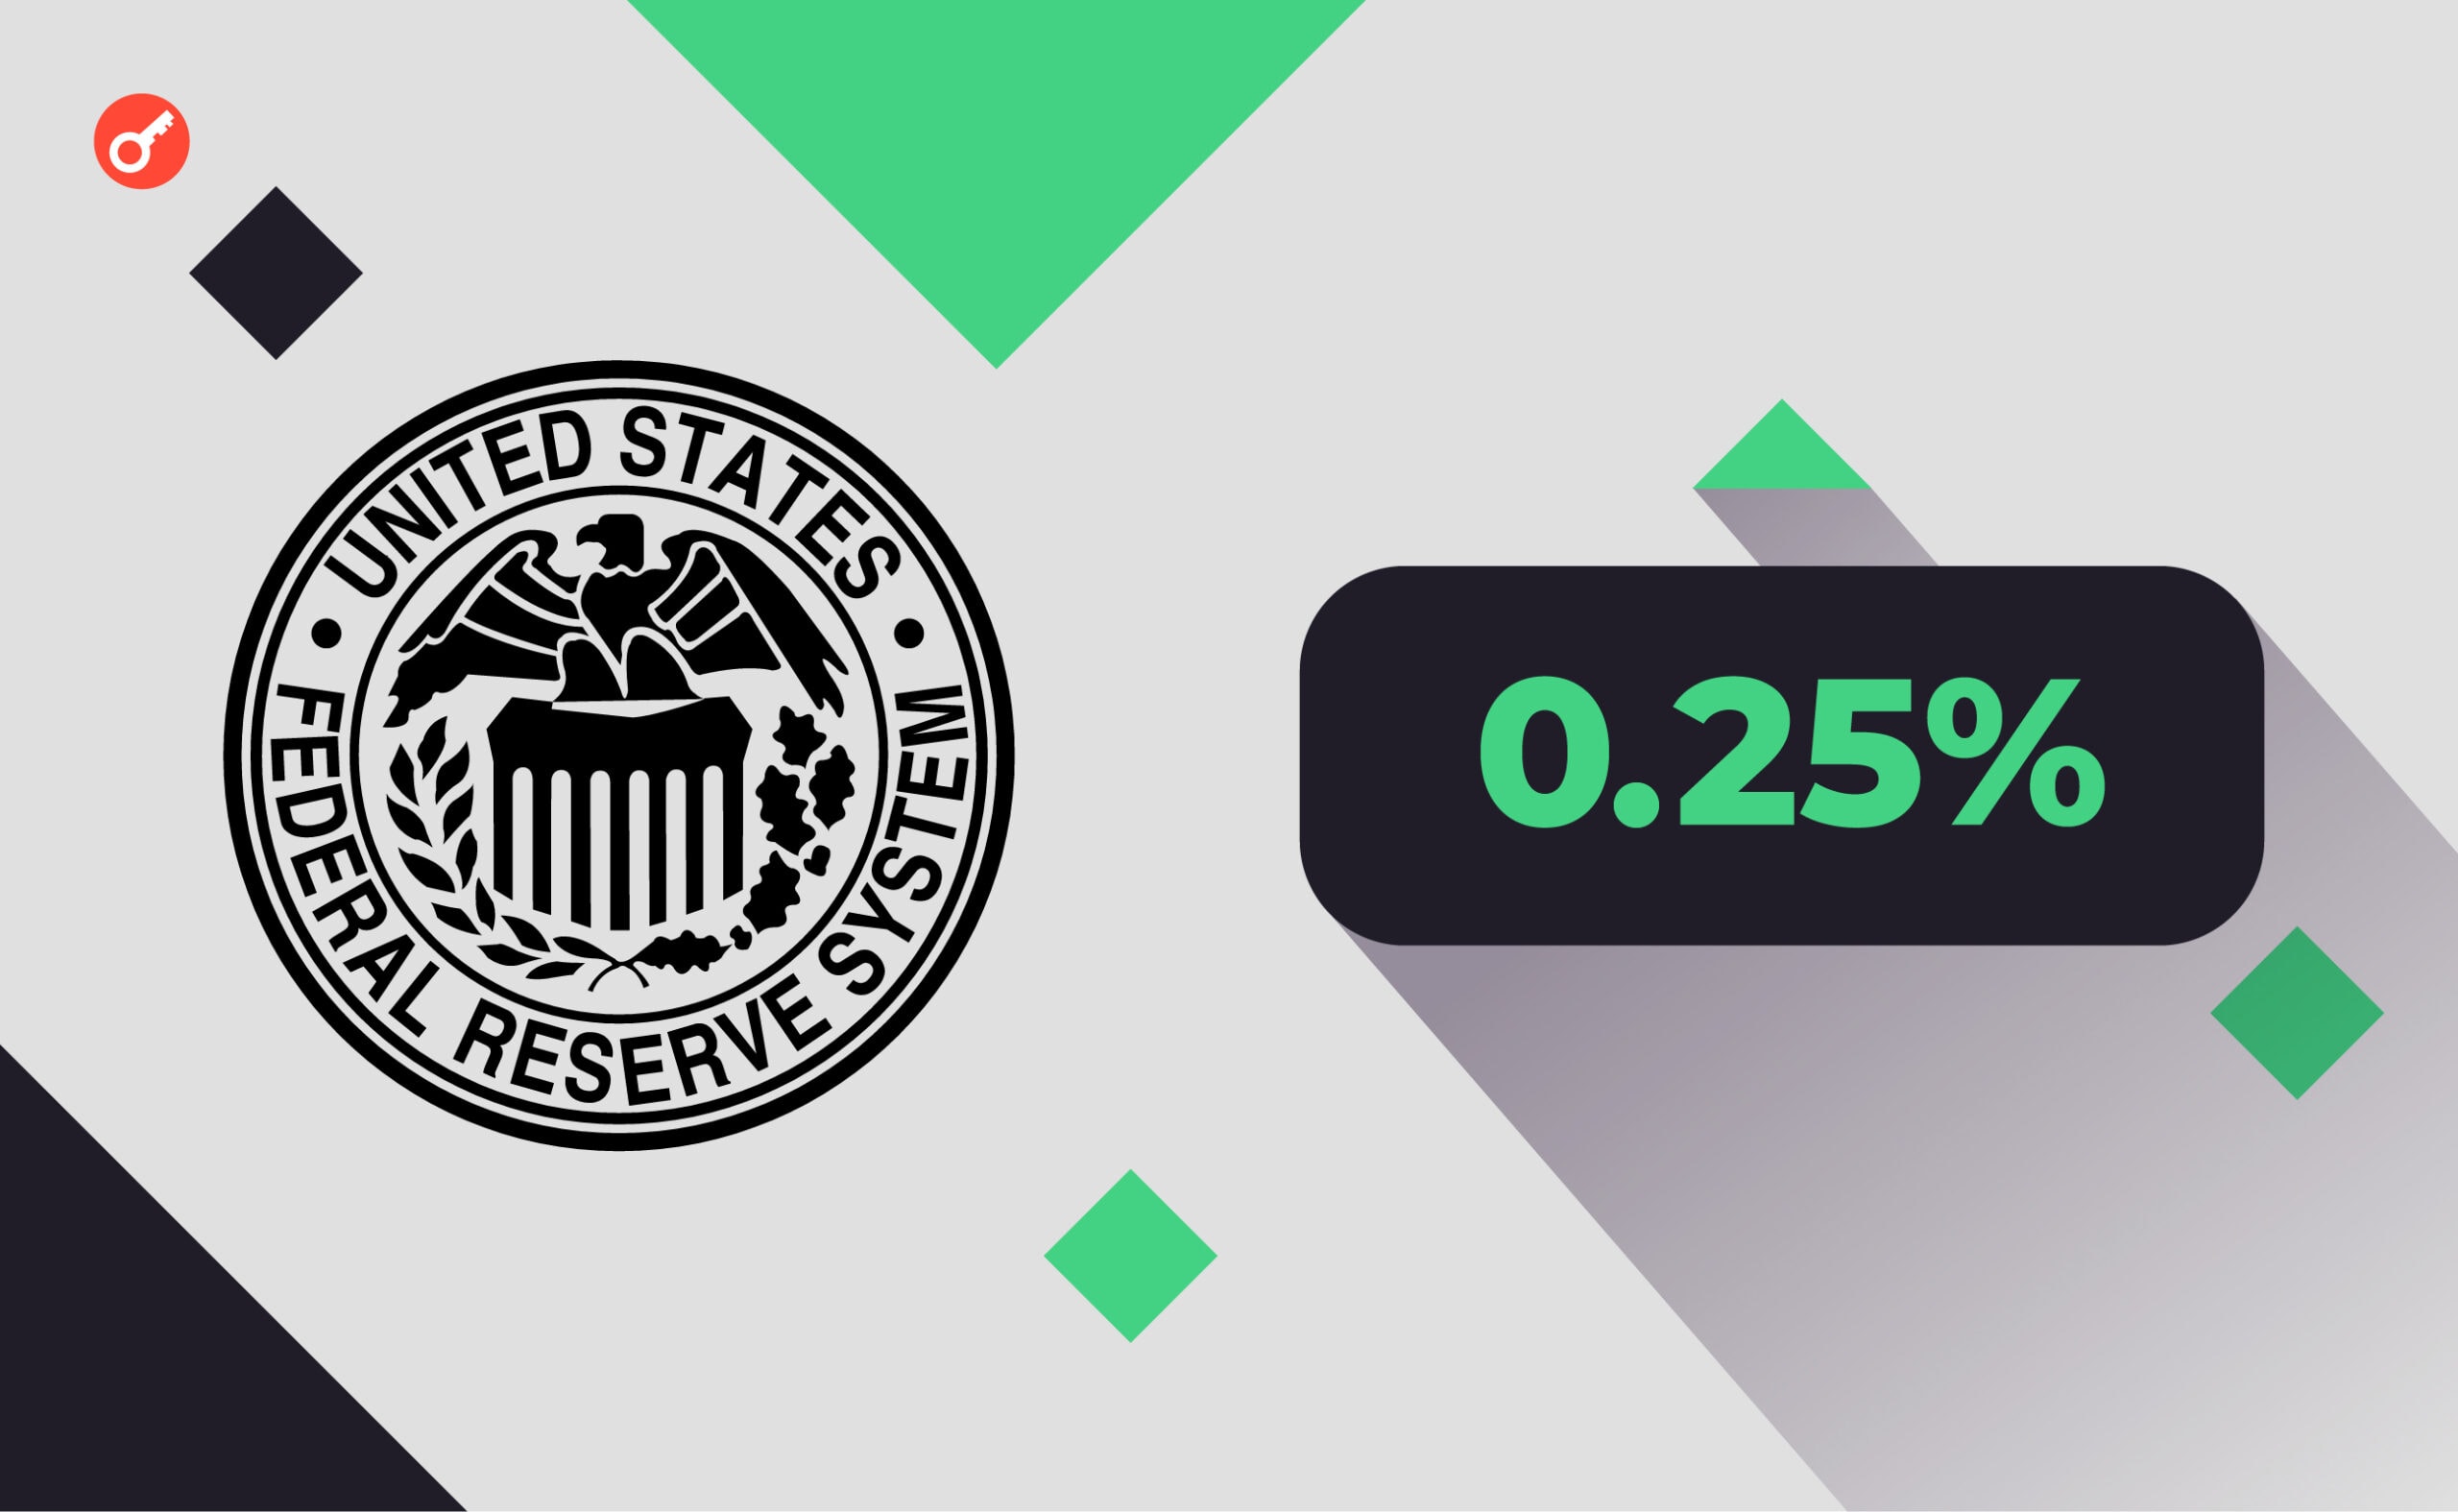 ФРС повысила процентную ставку в 11-й раз. Биткоин сохранил позиции. Заглавный коллаж новости.